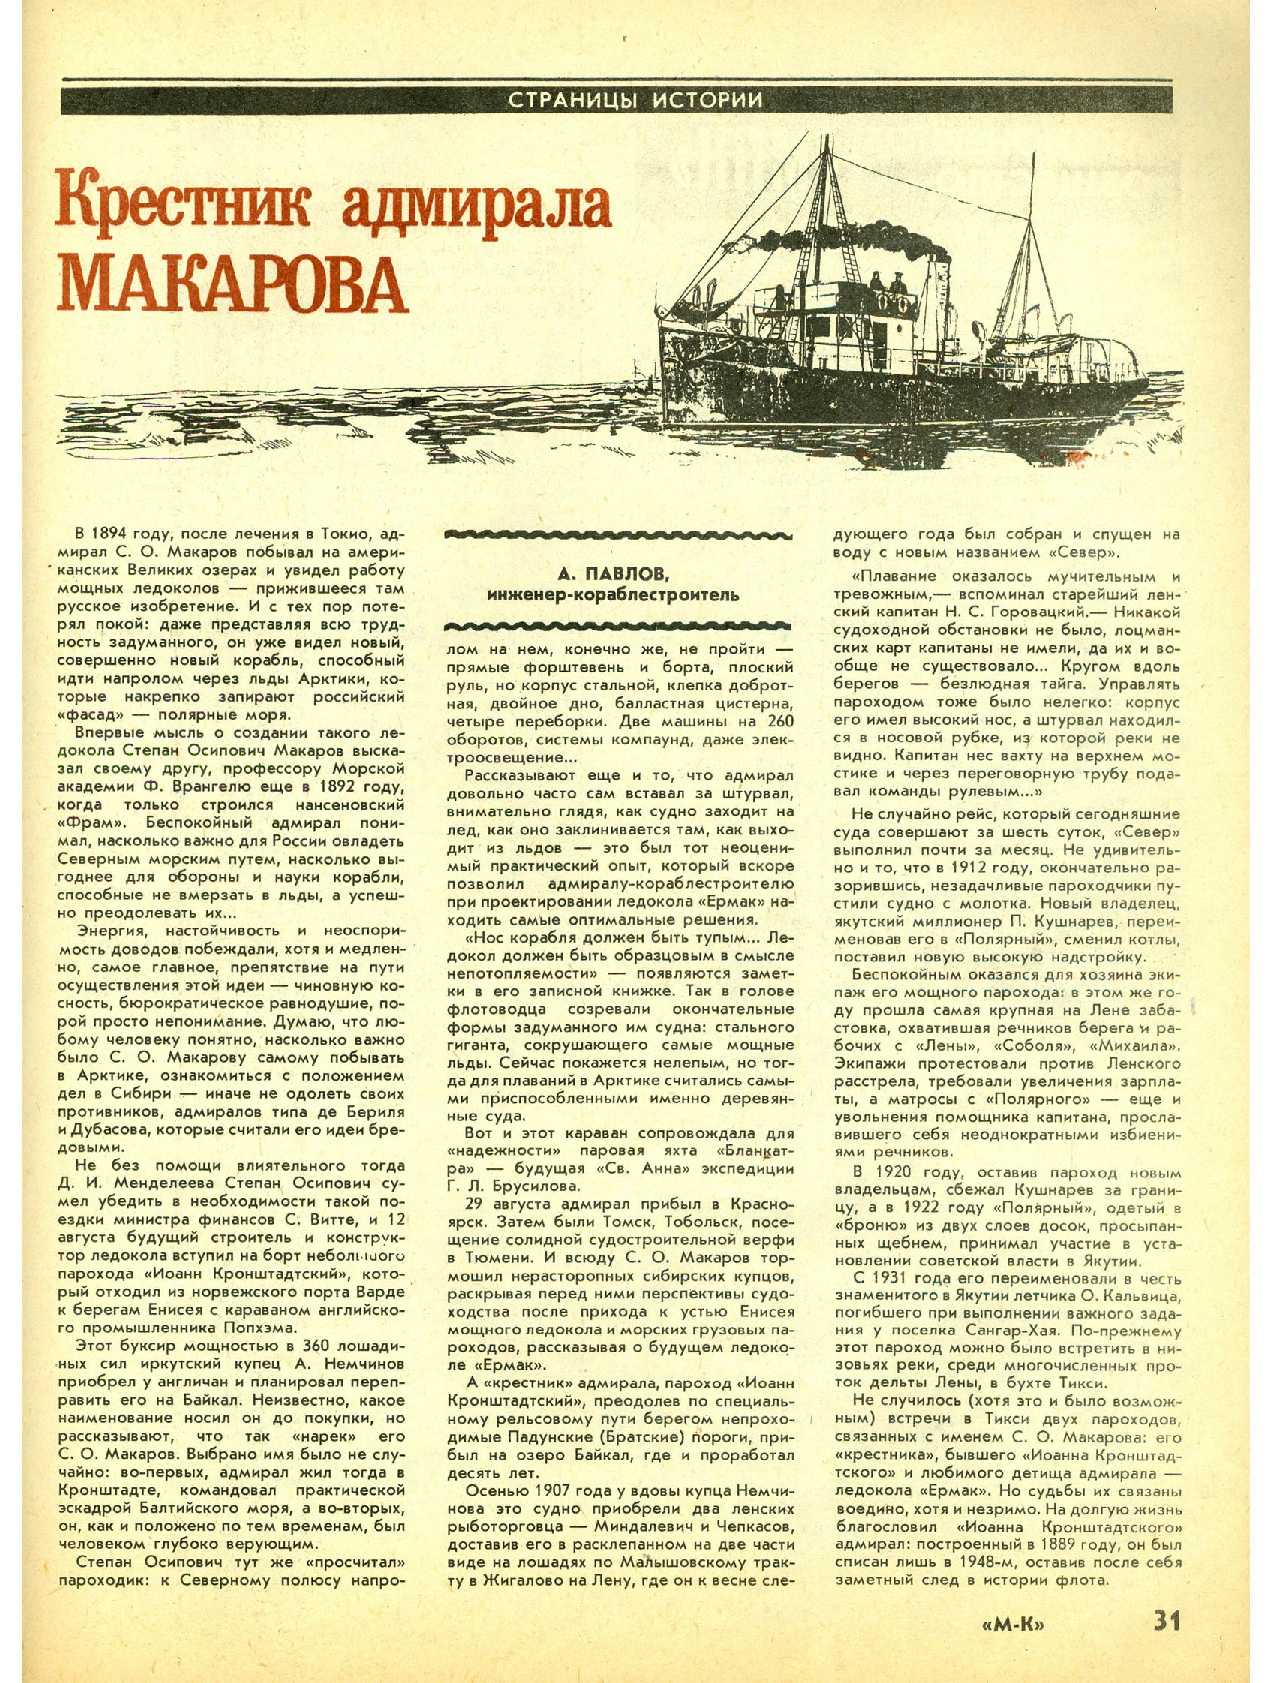 МК 1-2, 1992, 31 c.